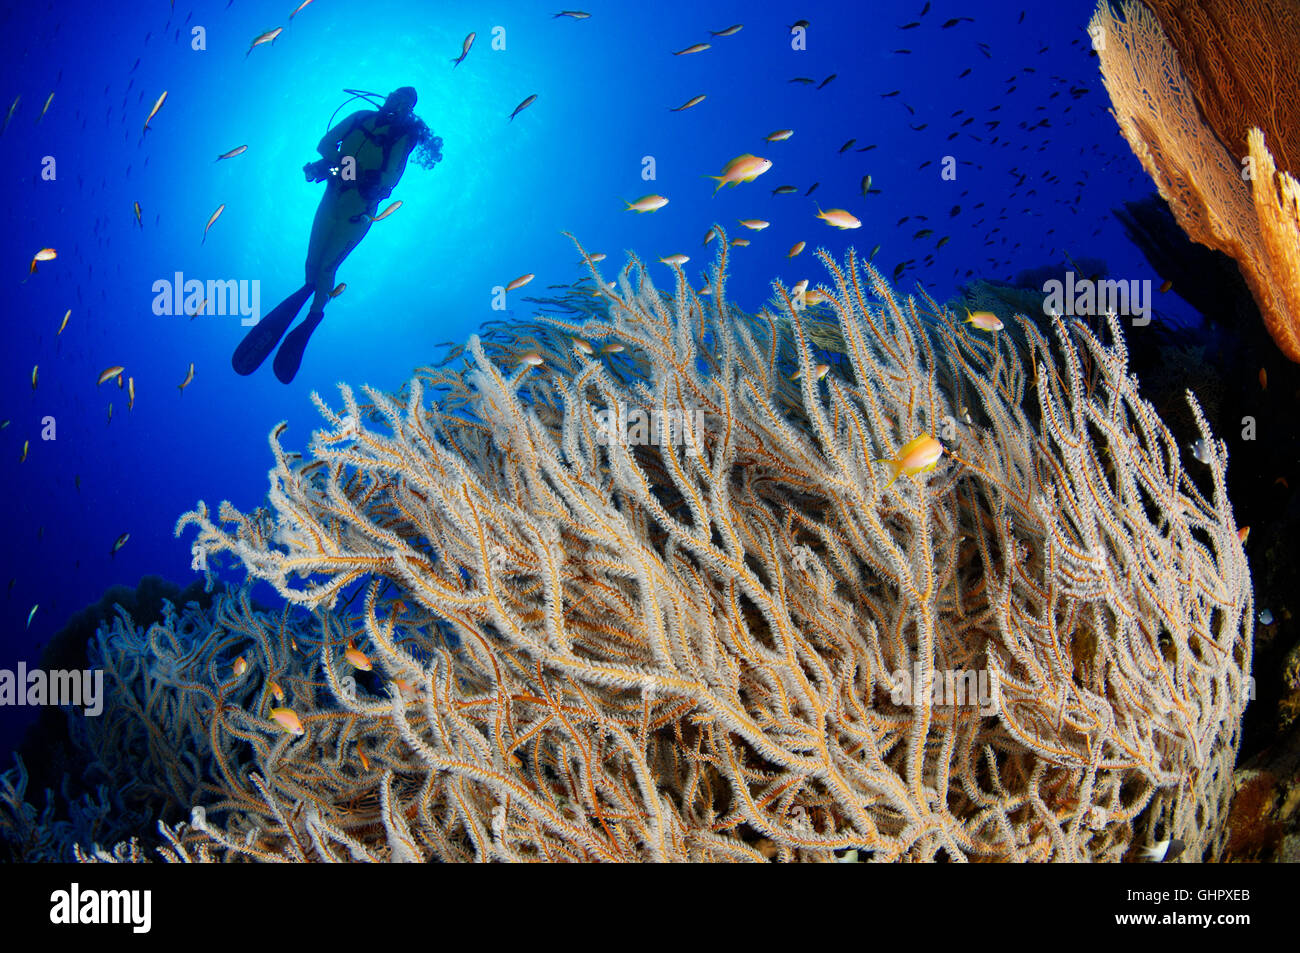 Subergorgia sp., Coral reef e di gorgonie e scuba diver, Hurghada, Isola Giftun Reef, Mar Rosso, Egitto, Africa Foto Stock